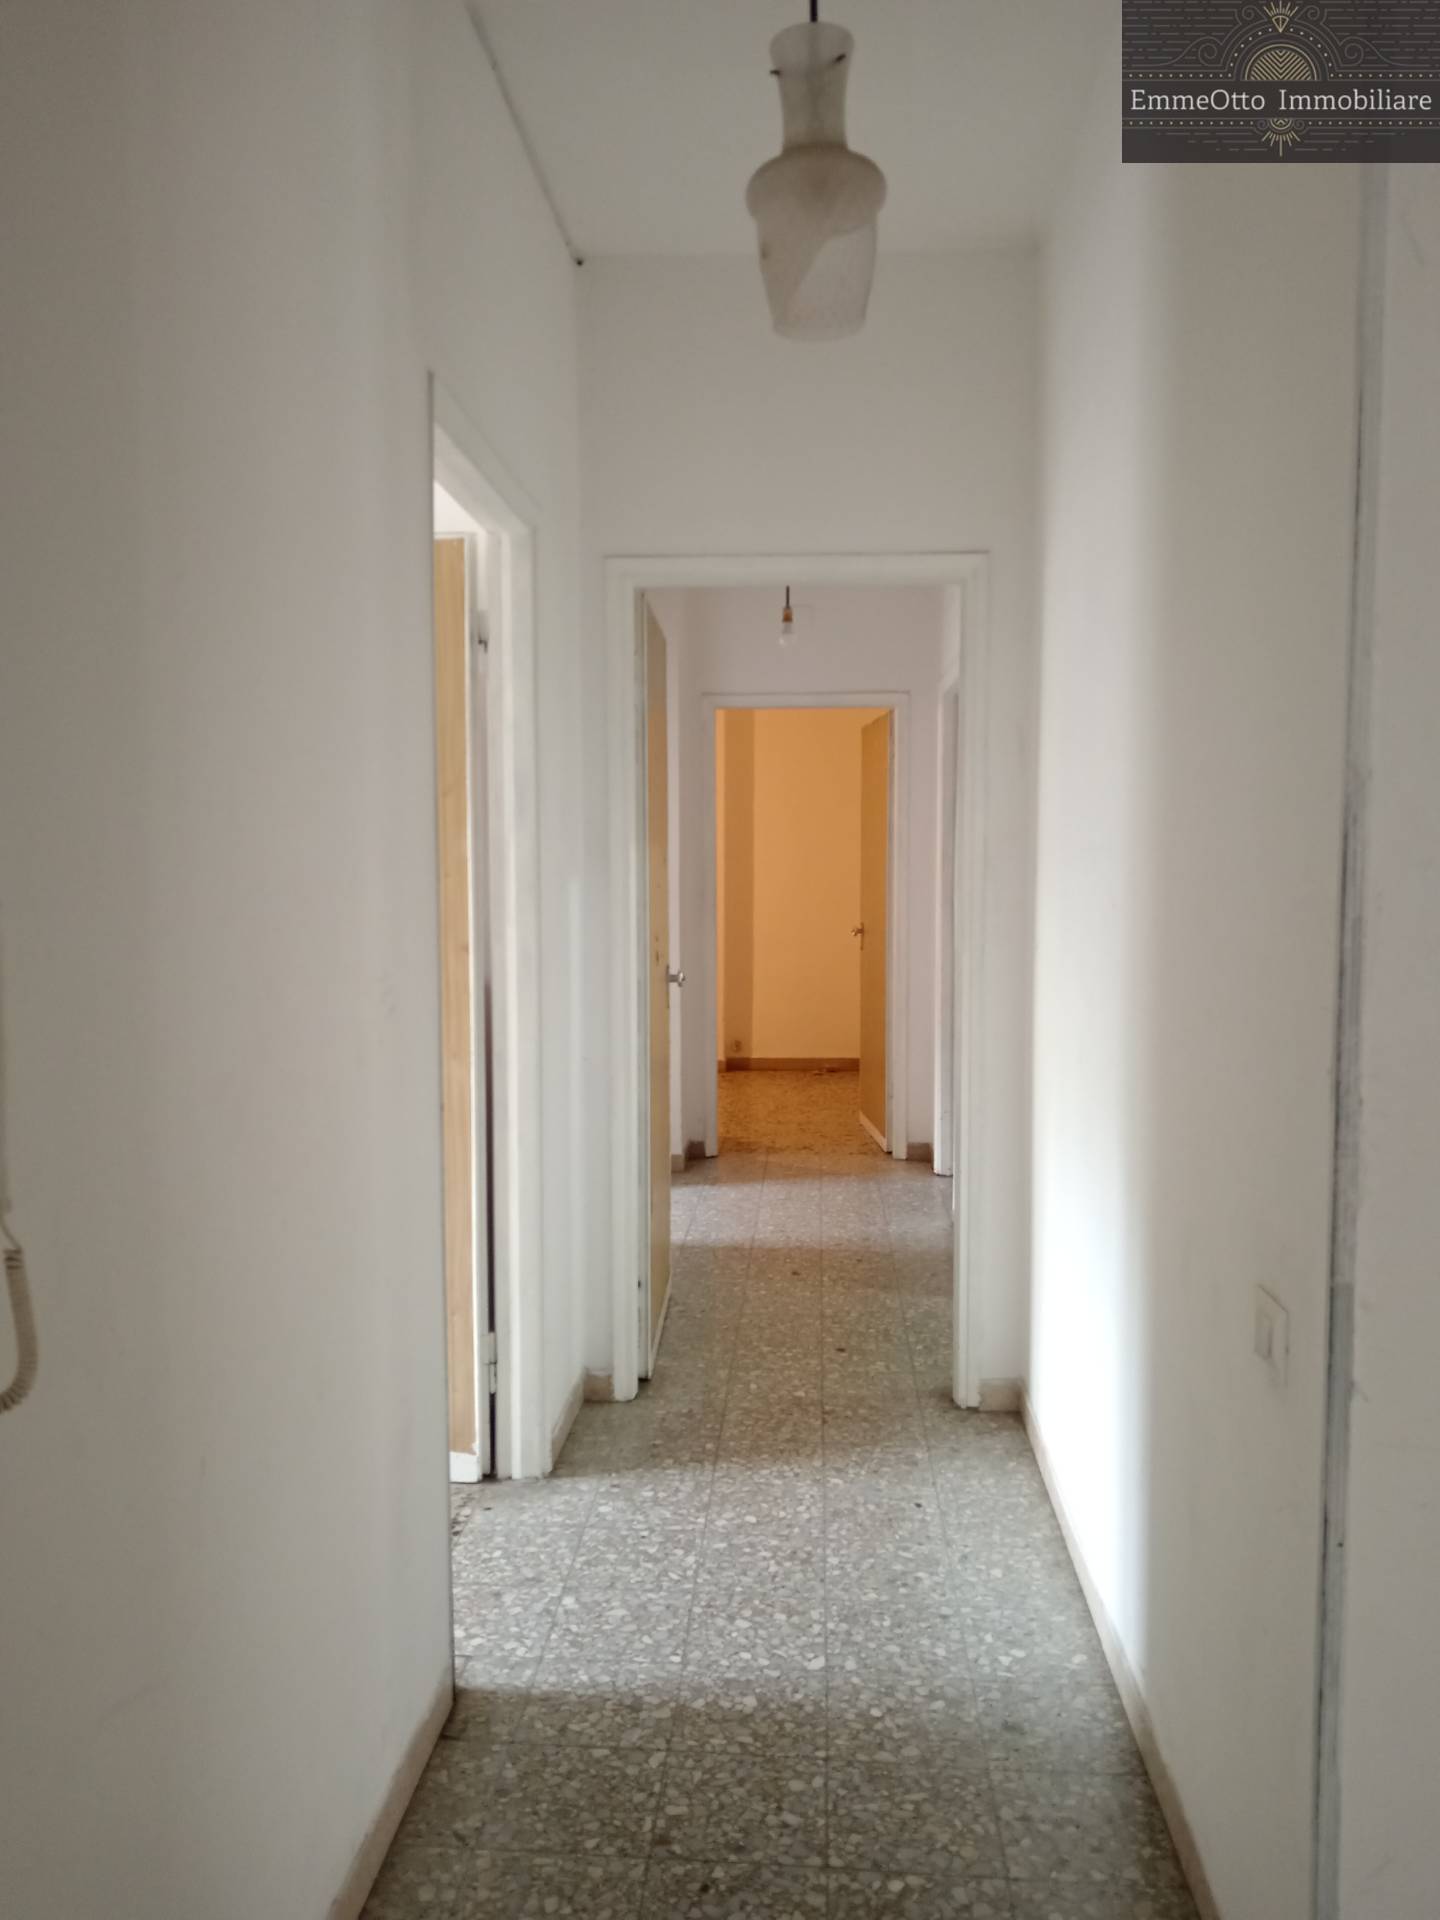 Appartamento da ristrutturare, Cagliari is mirrionis